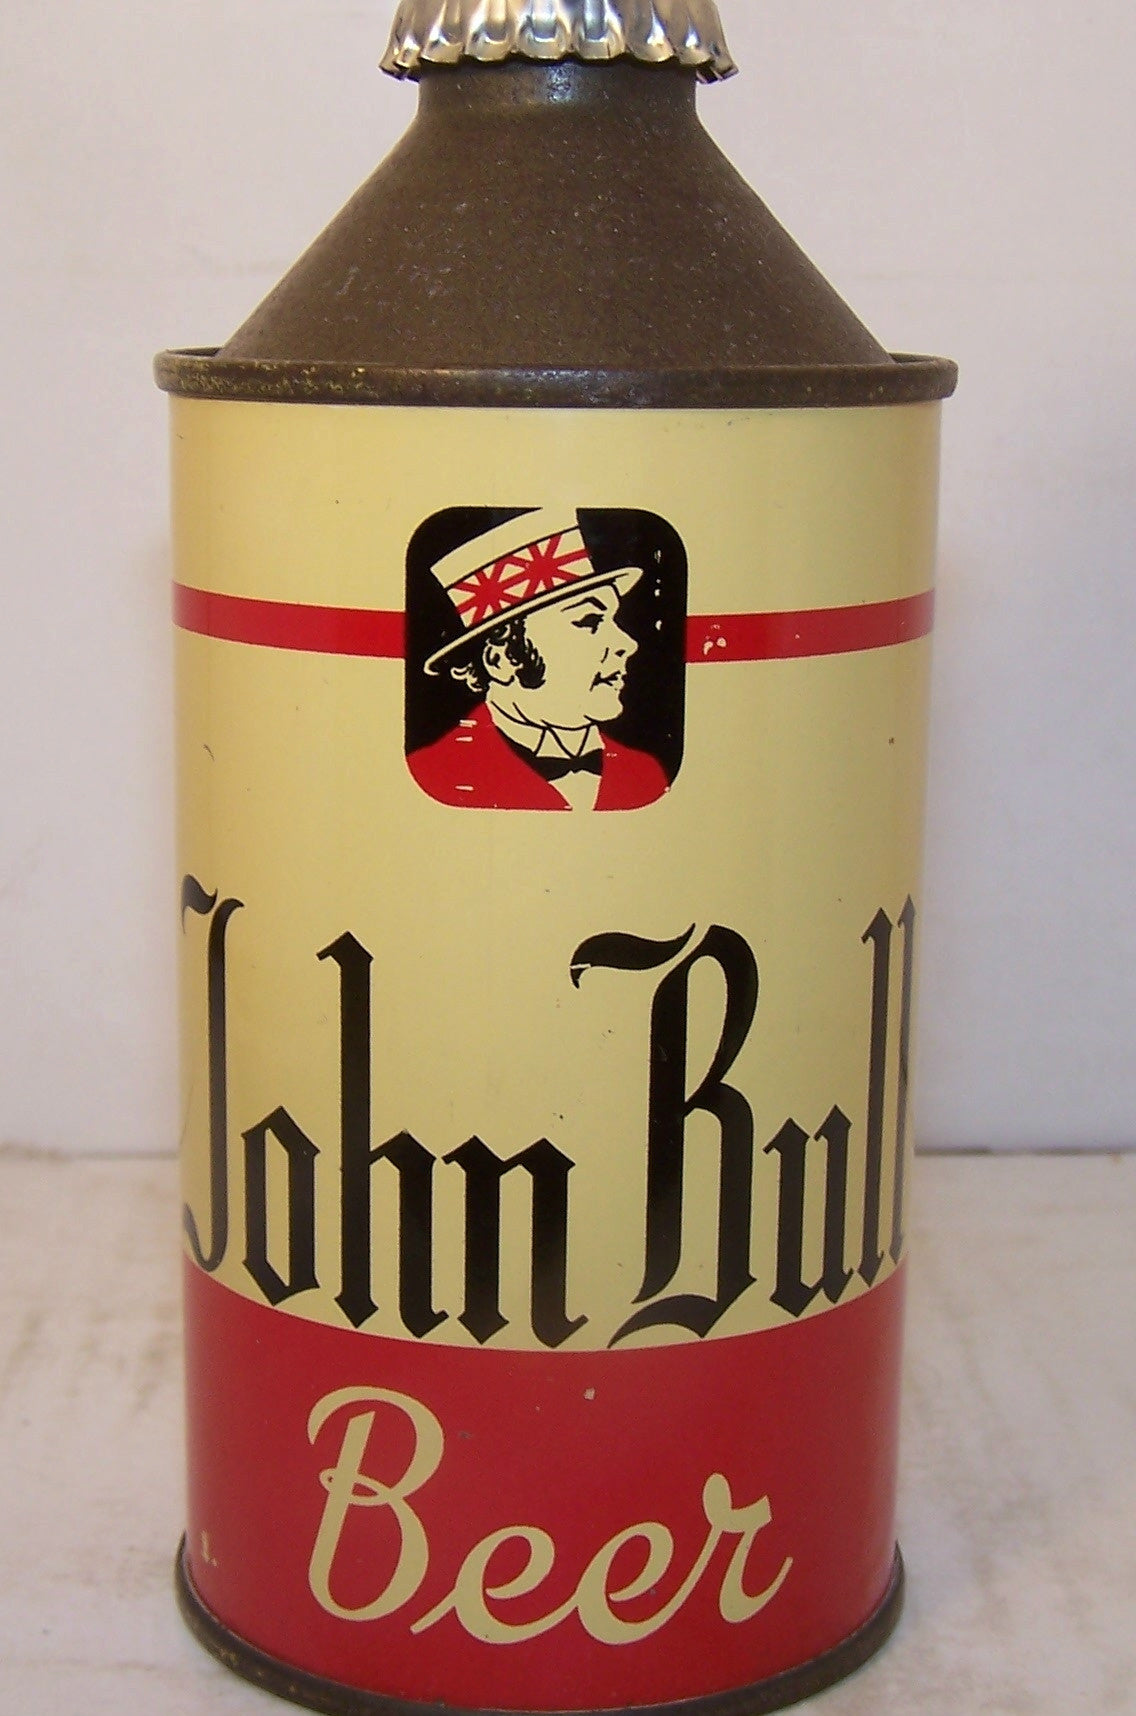 John Bull Beer, USBC 170-17, Grade 1/1+ Sold on 3/22/15